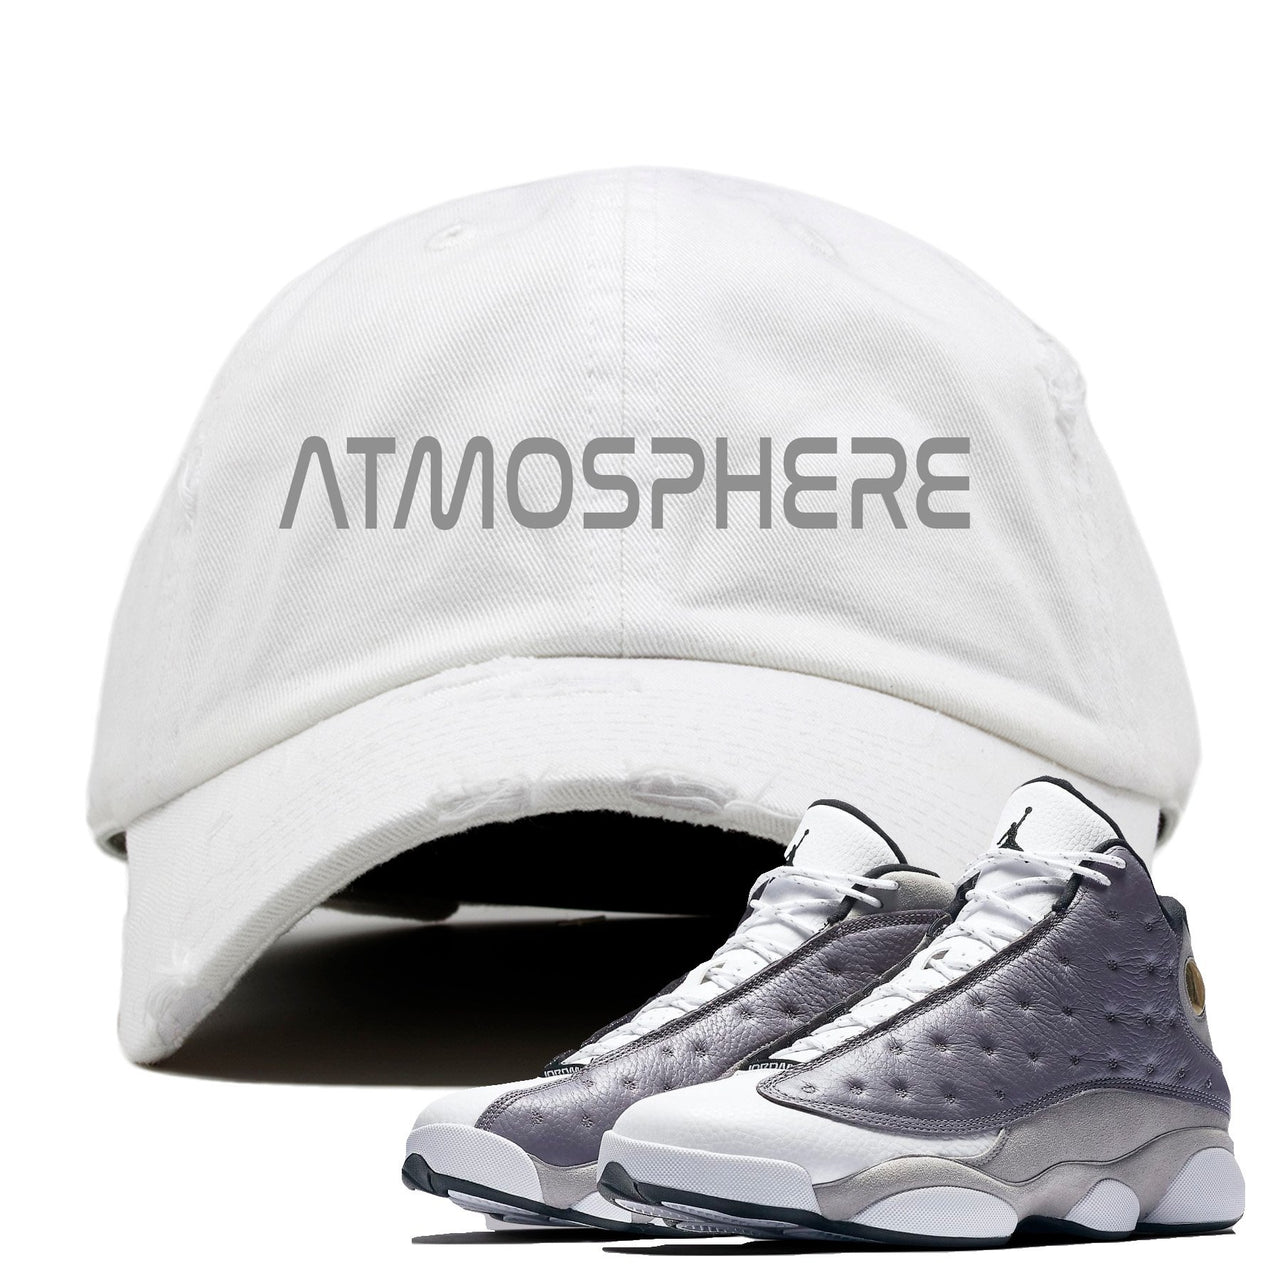 Atmosphere Grey 13s Distressed Dad Hat | Atmosphere, White